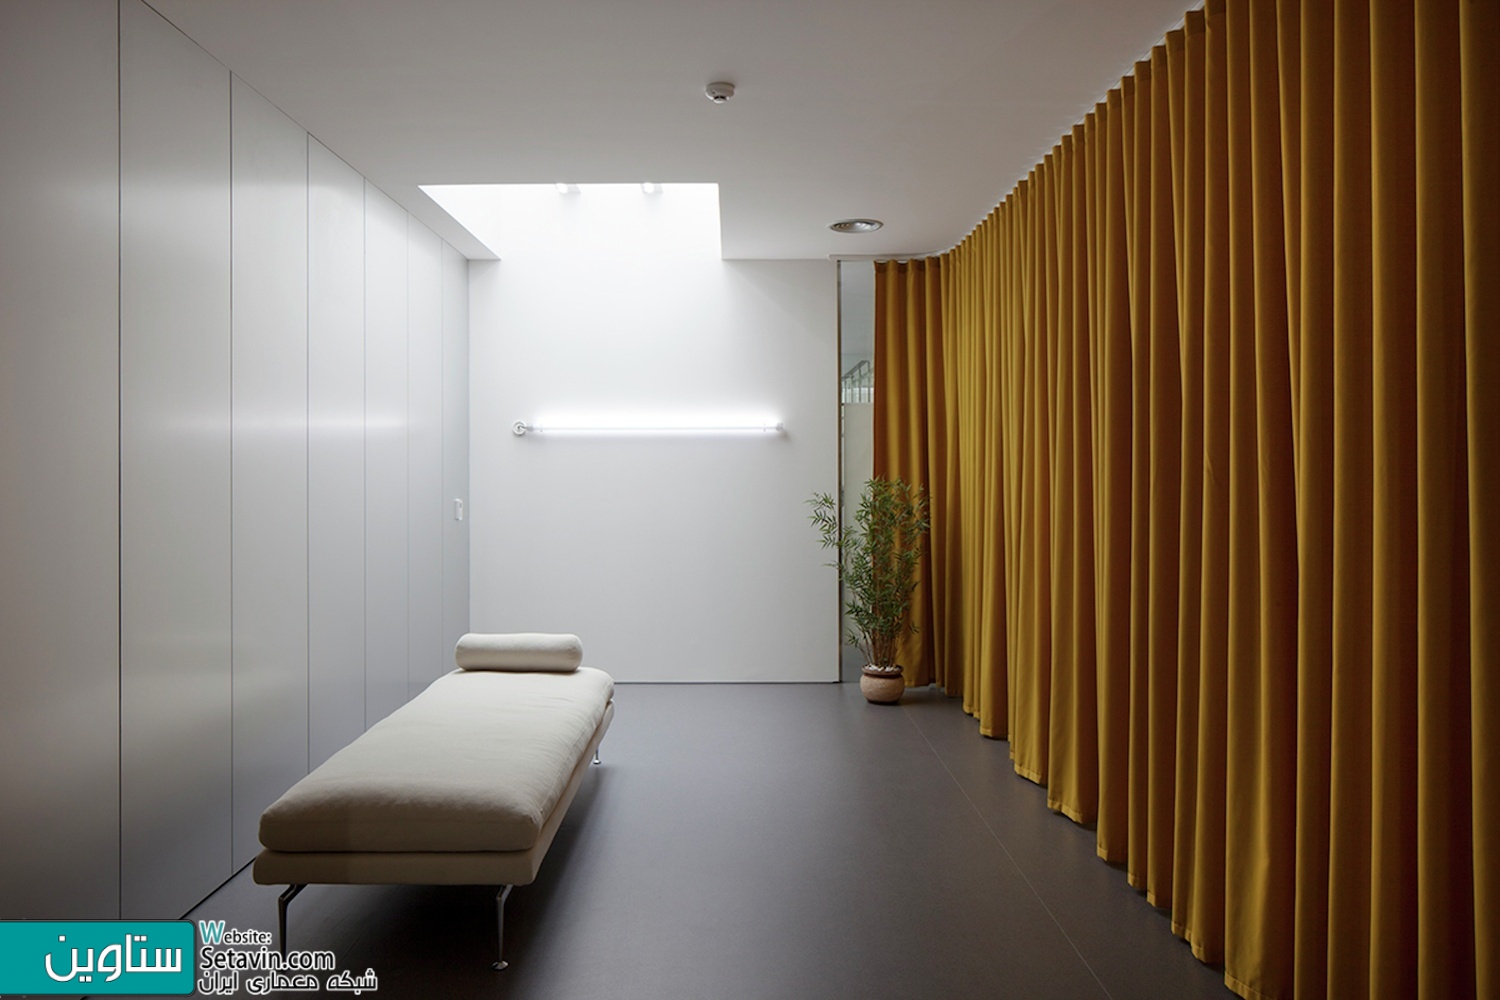 اتاق های انتظار ،فضاهای پذیرش و حیاط ها:43 نمونه قابل توجه از معماری فضاهای بیمارستان